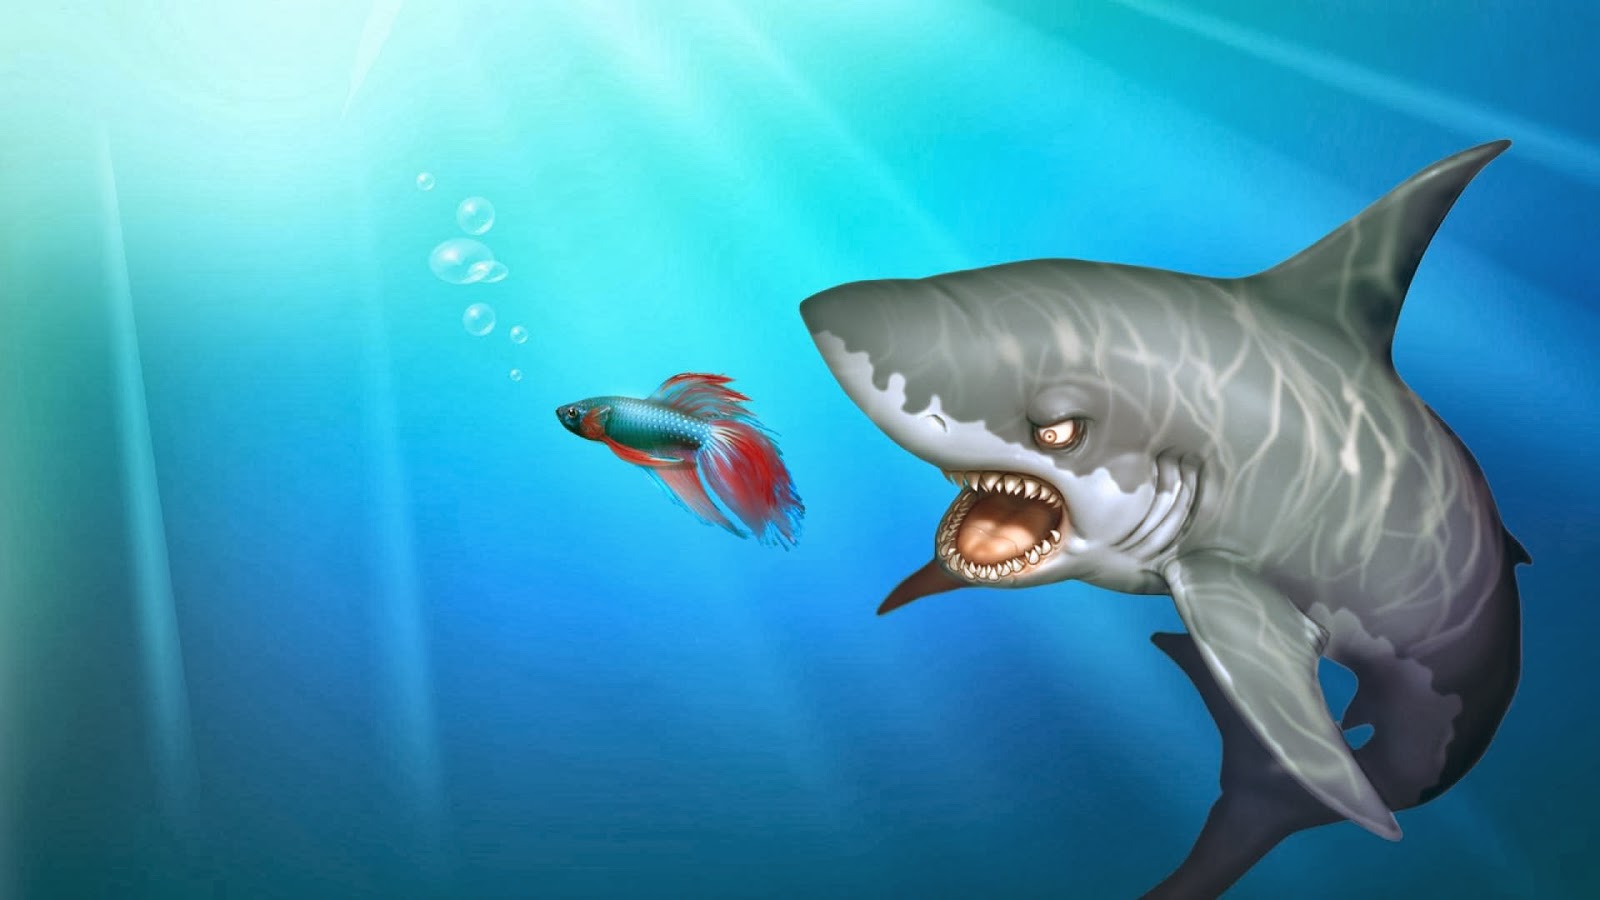 Wallpaper Kartun Shark - Shark Images Hd Download , HD Wallpaper & Backgrounds